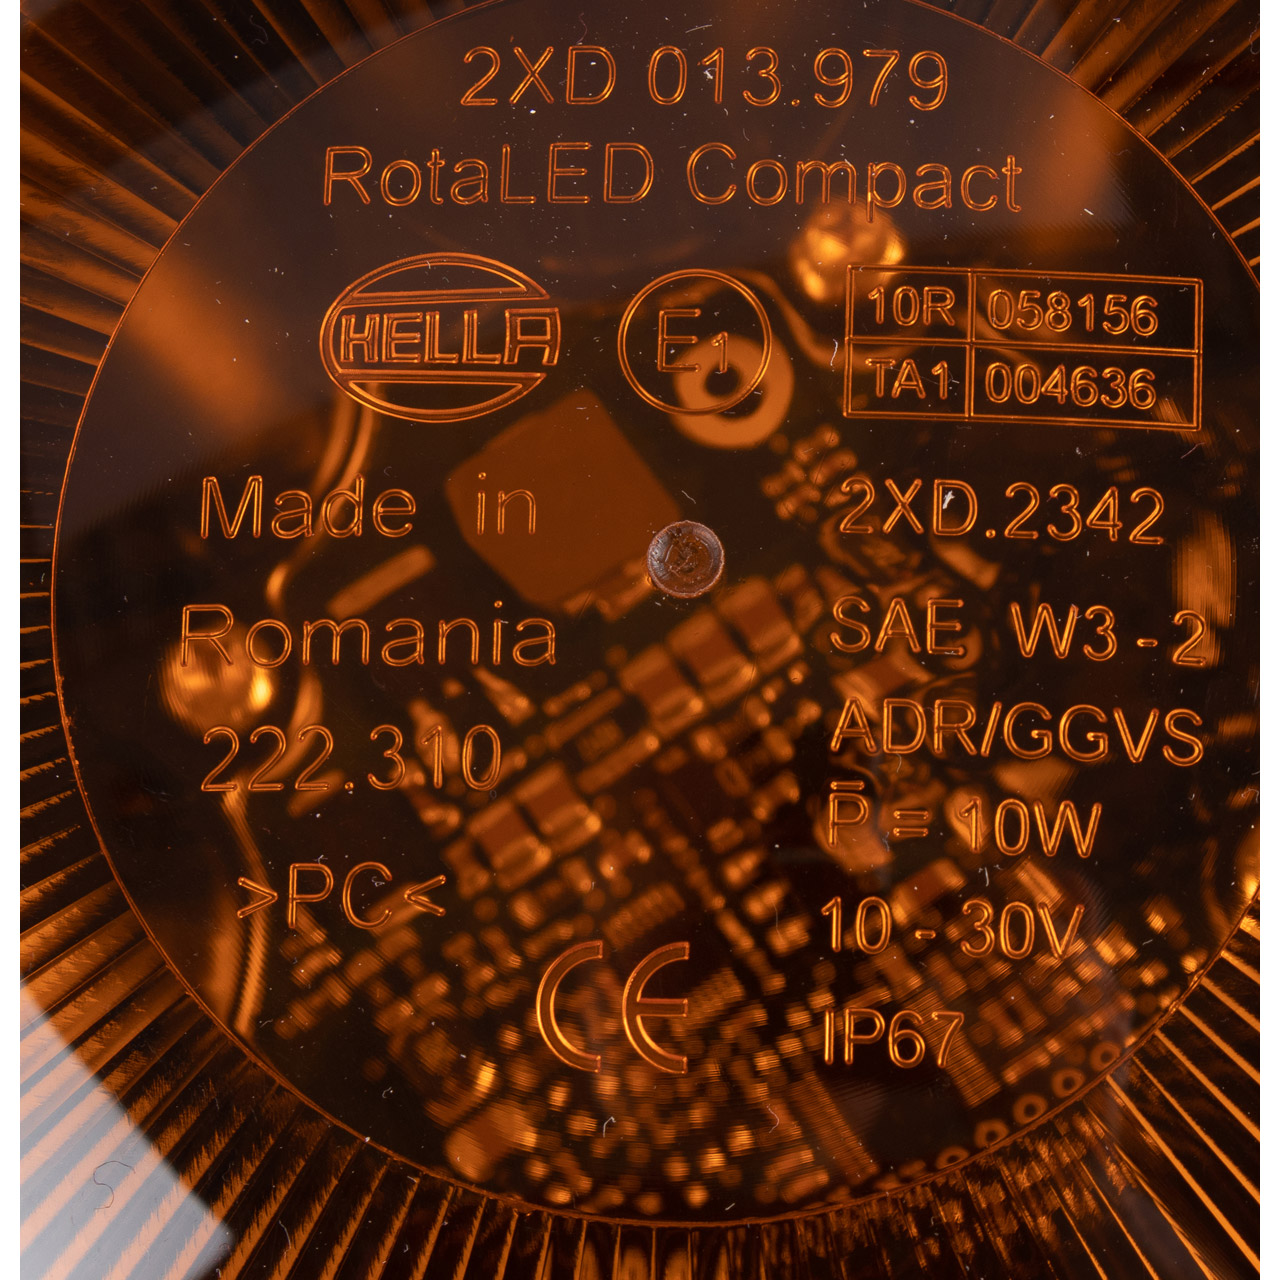 HELLA 2XD013979011 LED Warnleuchte Blitz-Kennleuchte Rundumleuchte RotaLED Compact gelb